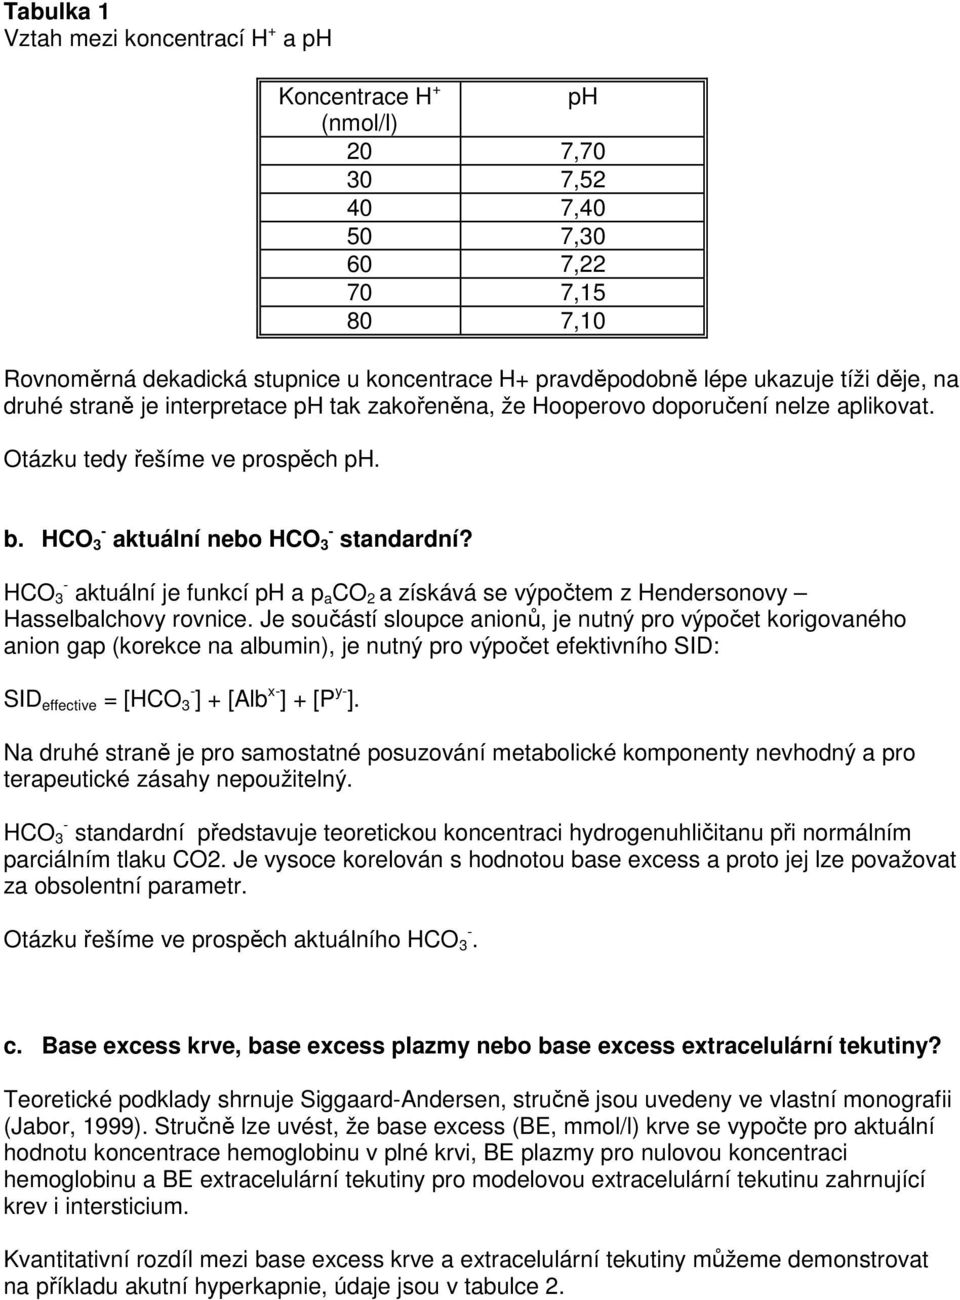 Acidobazická rovnováha a její vztahy k iontovému hospodářství. Klinické  aplikace. - PDF Free Download